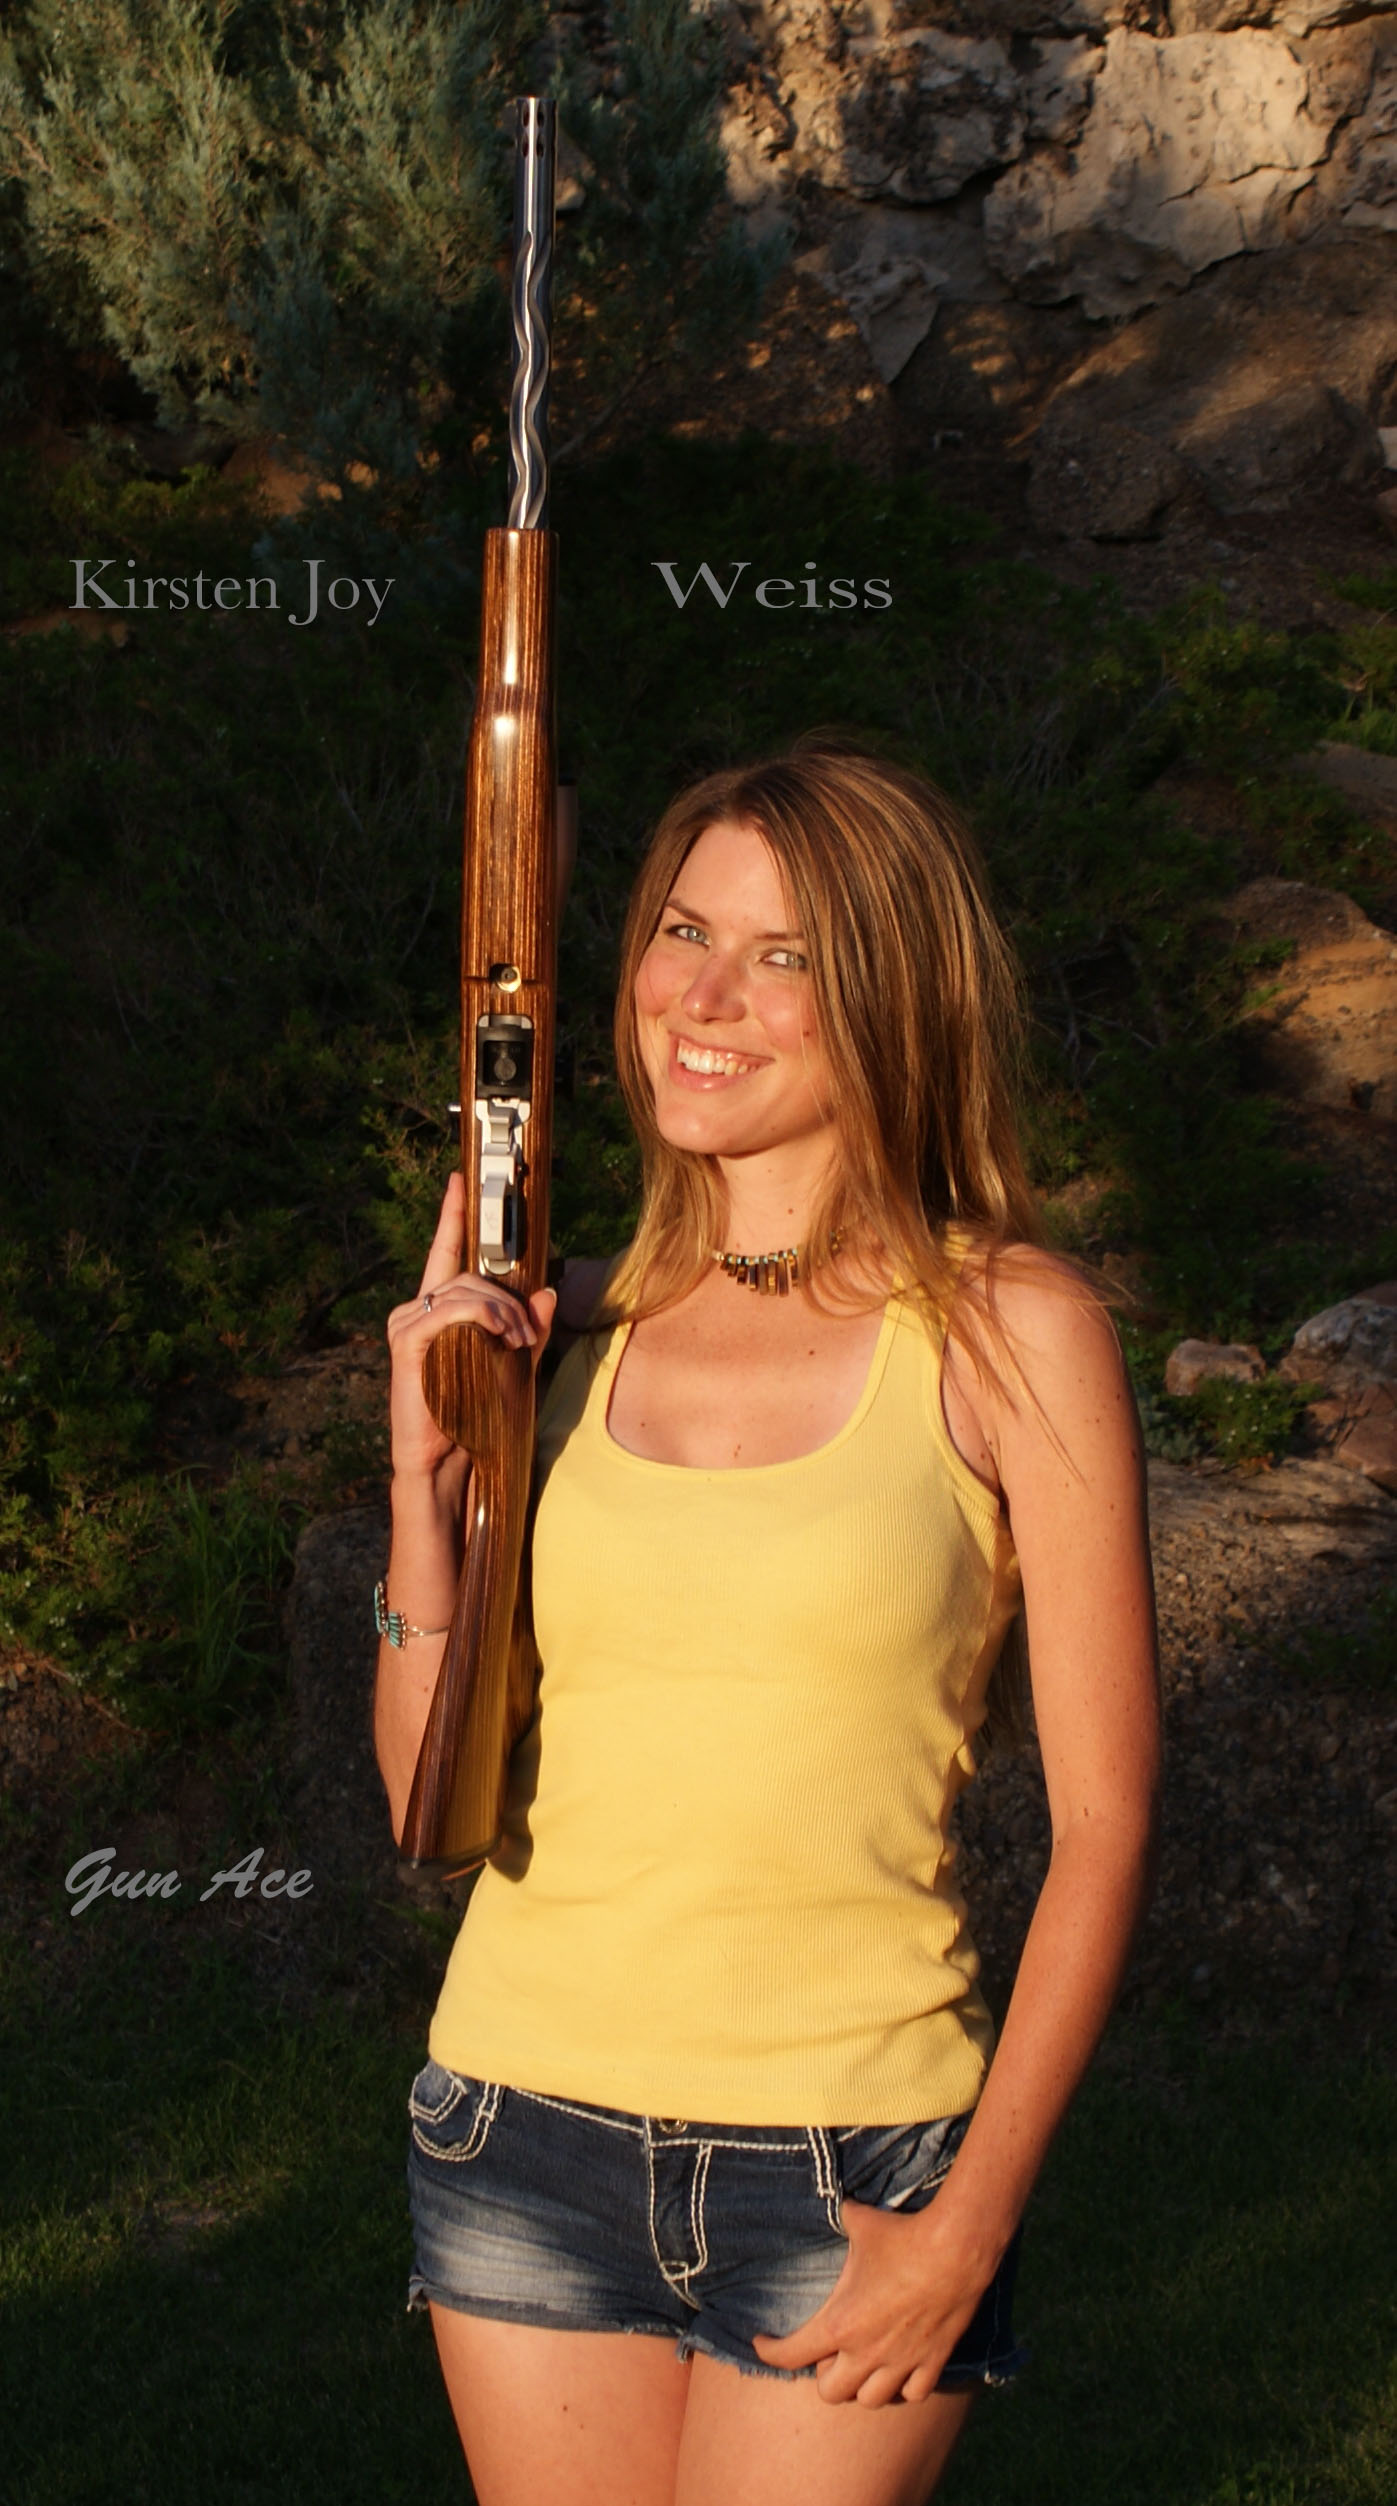 Kirsten-Joy-Weiss-Gun-Ace.jpg